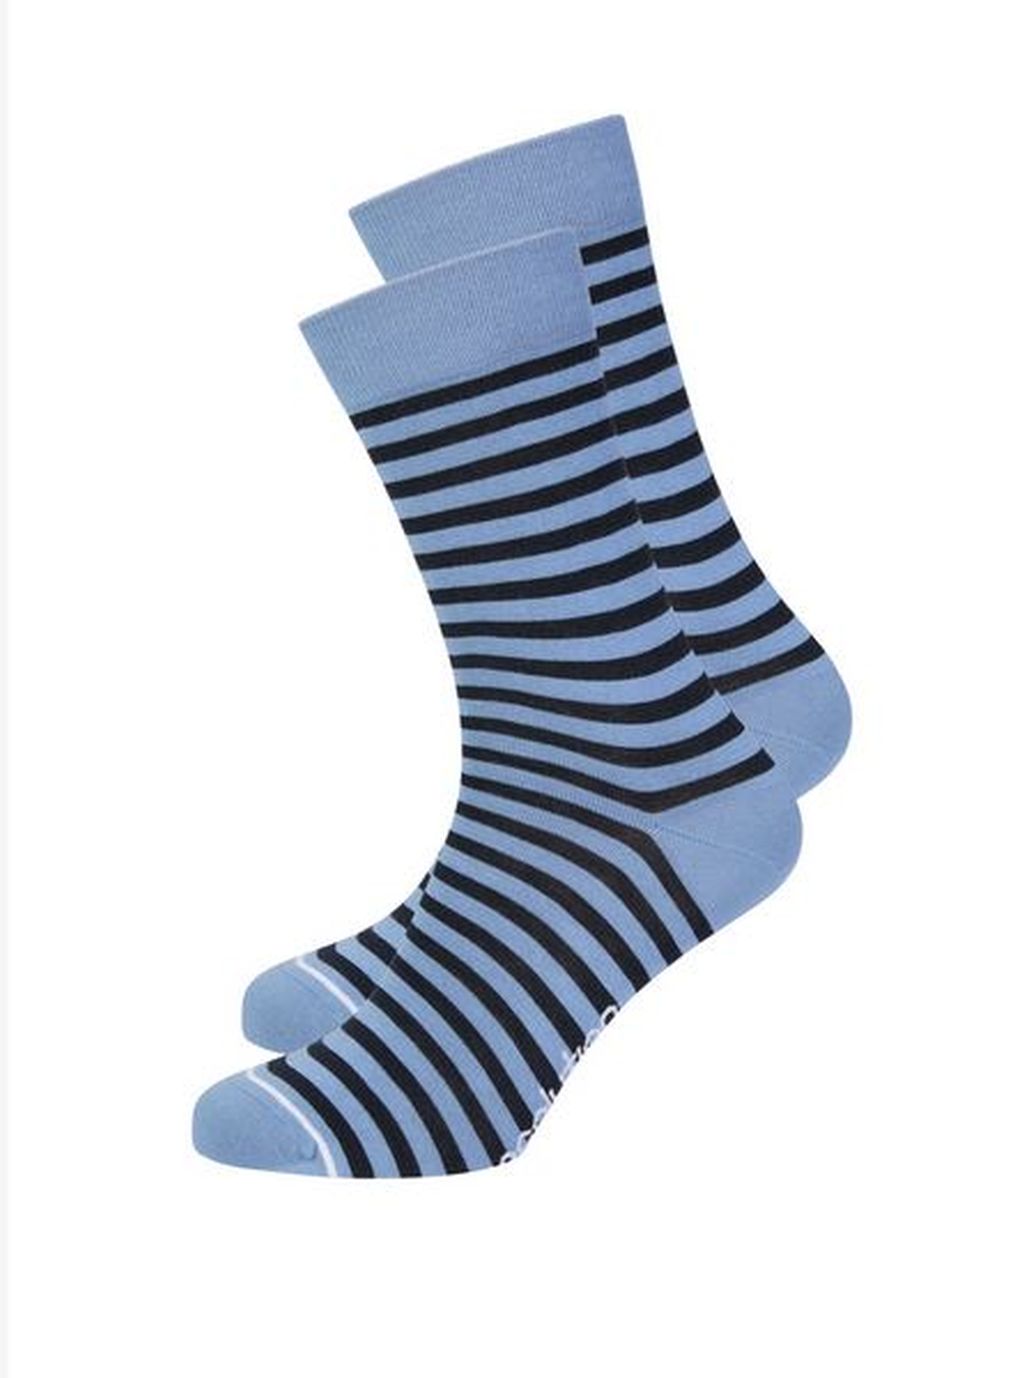 Basic Socks #STRIPES navy/blue heaven/white 43-47